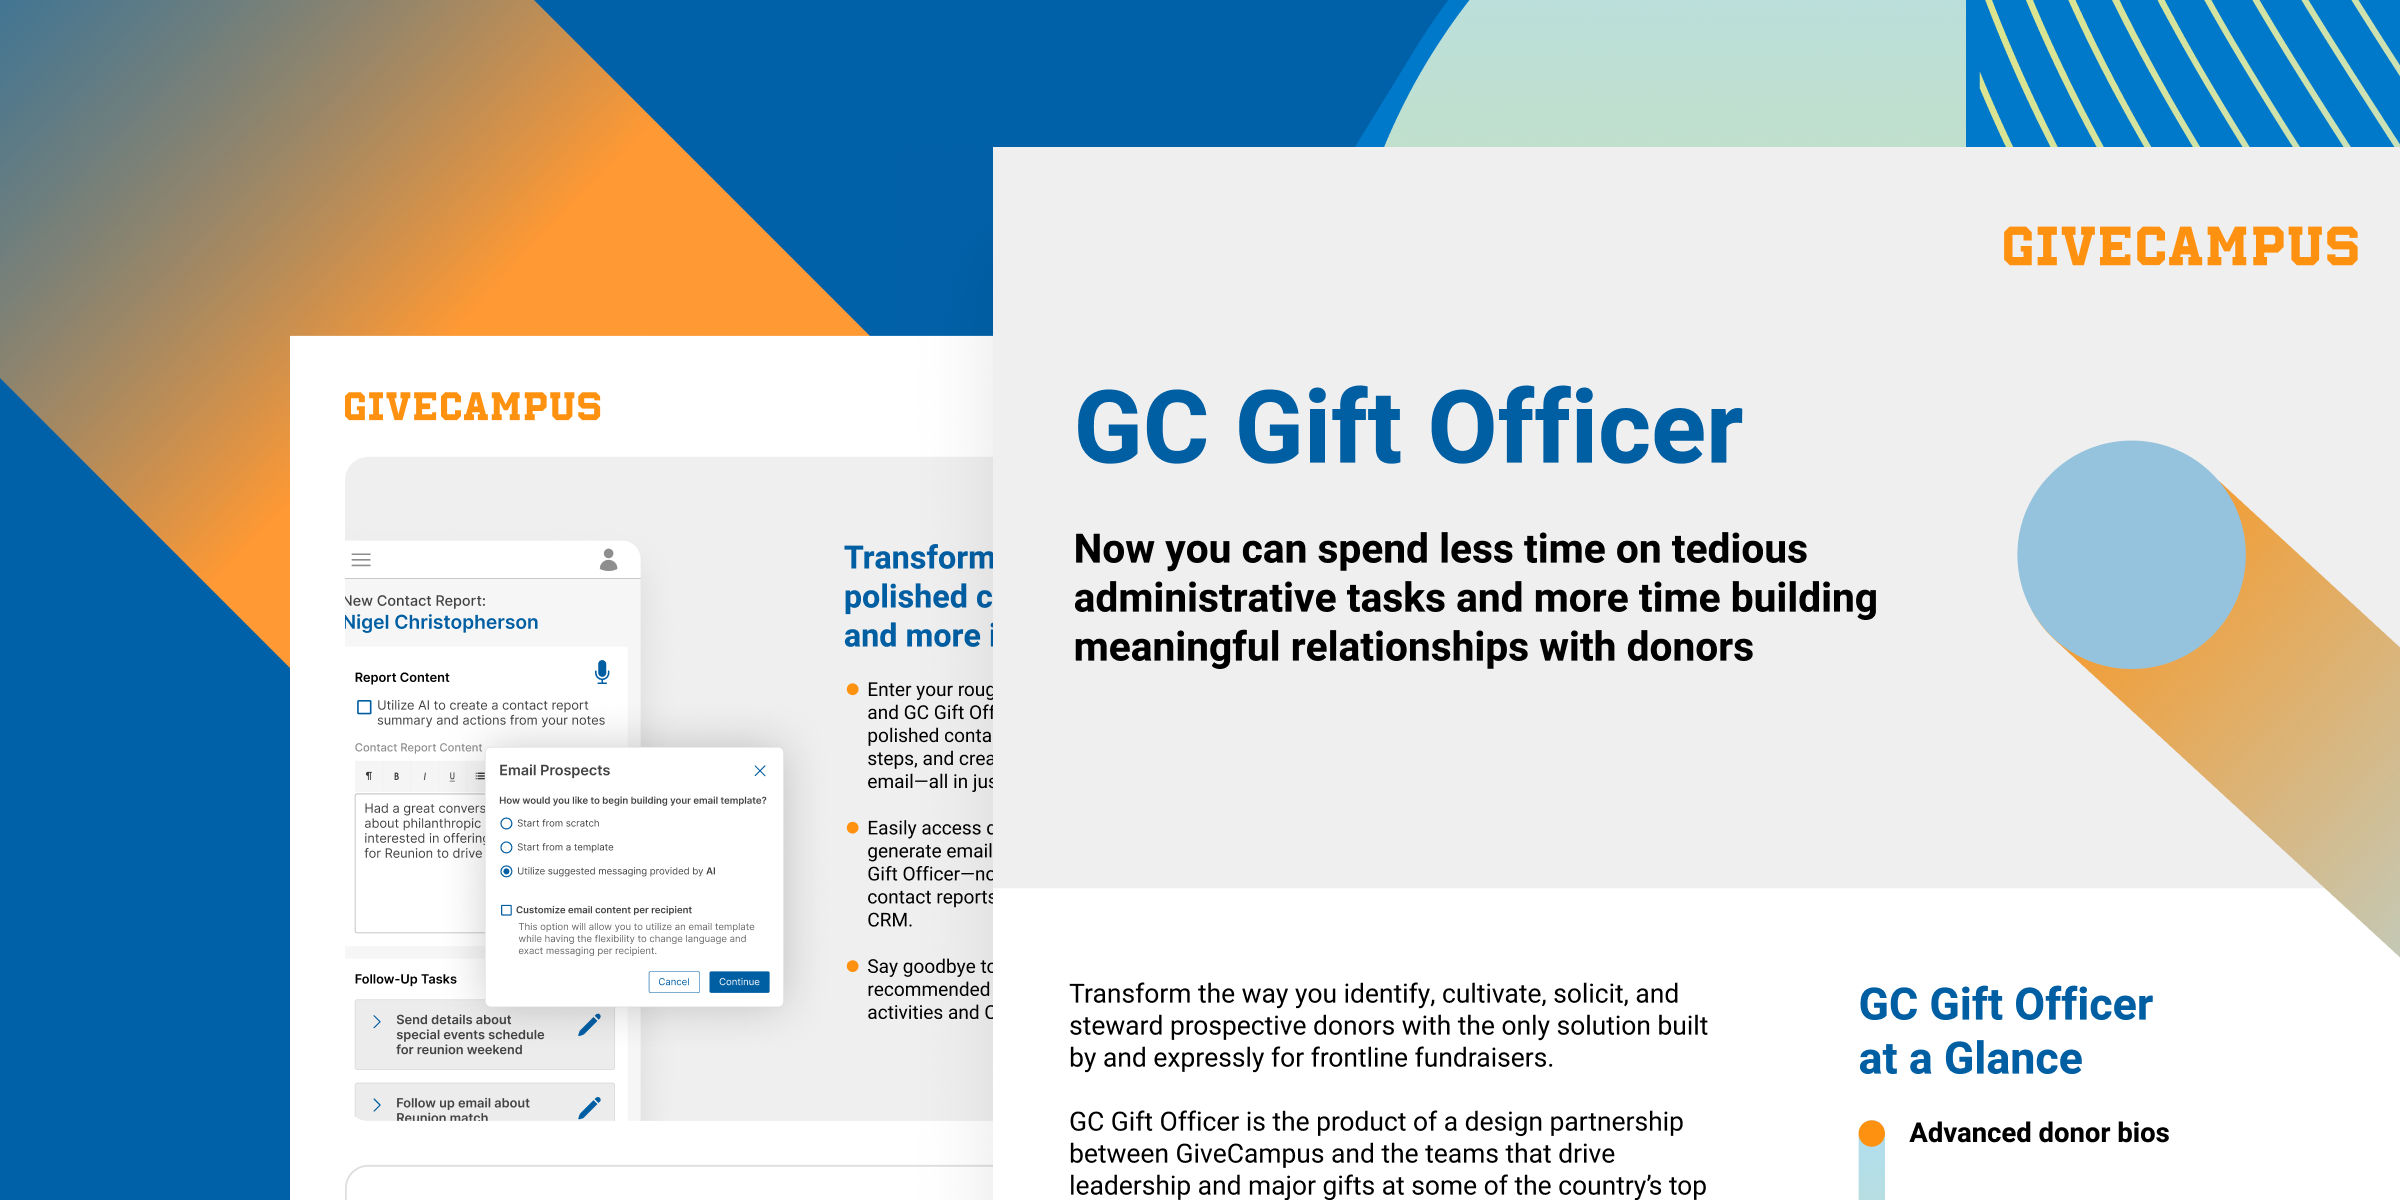 GC Gift Officer